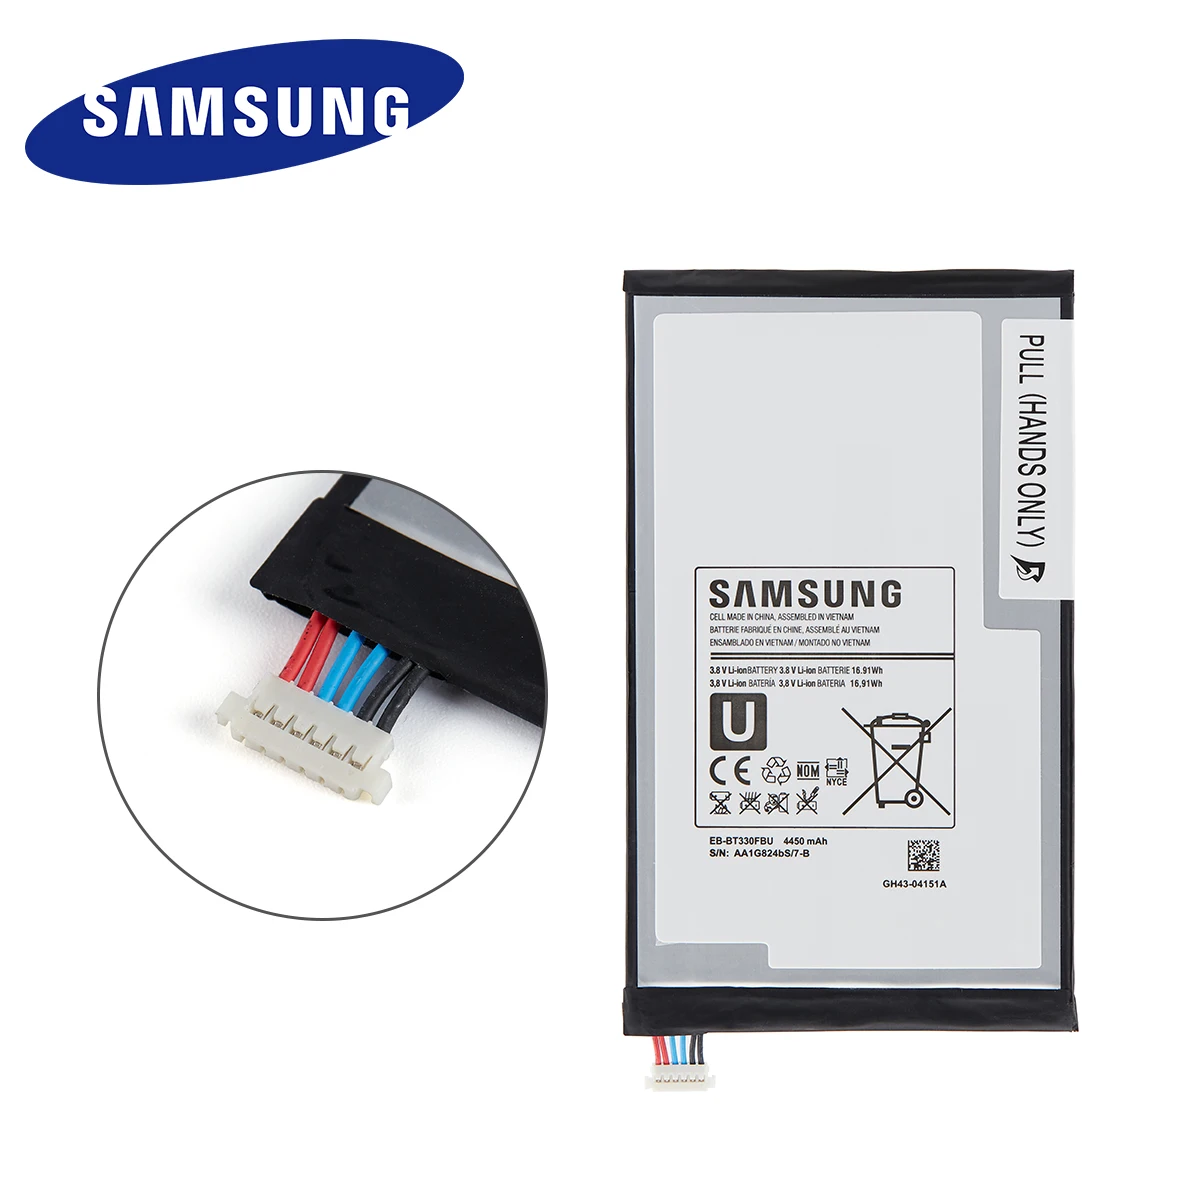 Originalni SAMSUNG EB-BT330FBU EB-BT330FBE 4450mAh Baterija Za Samsung Galaxy Tab 4 8.0 T330 T331 T335 SM-T330 SM-T331 T337 +Orodja